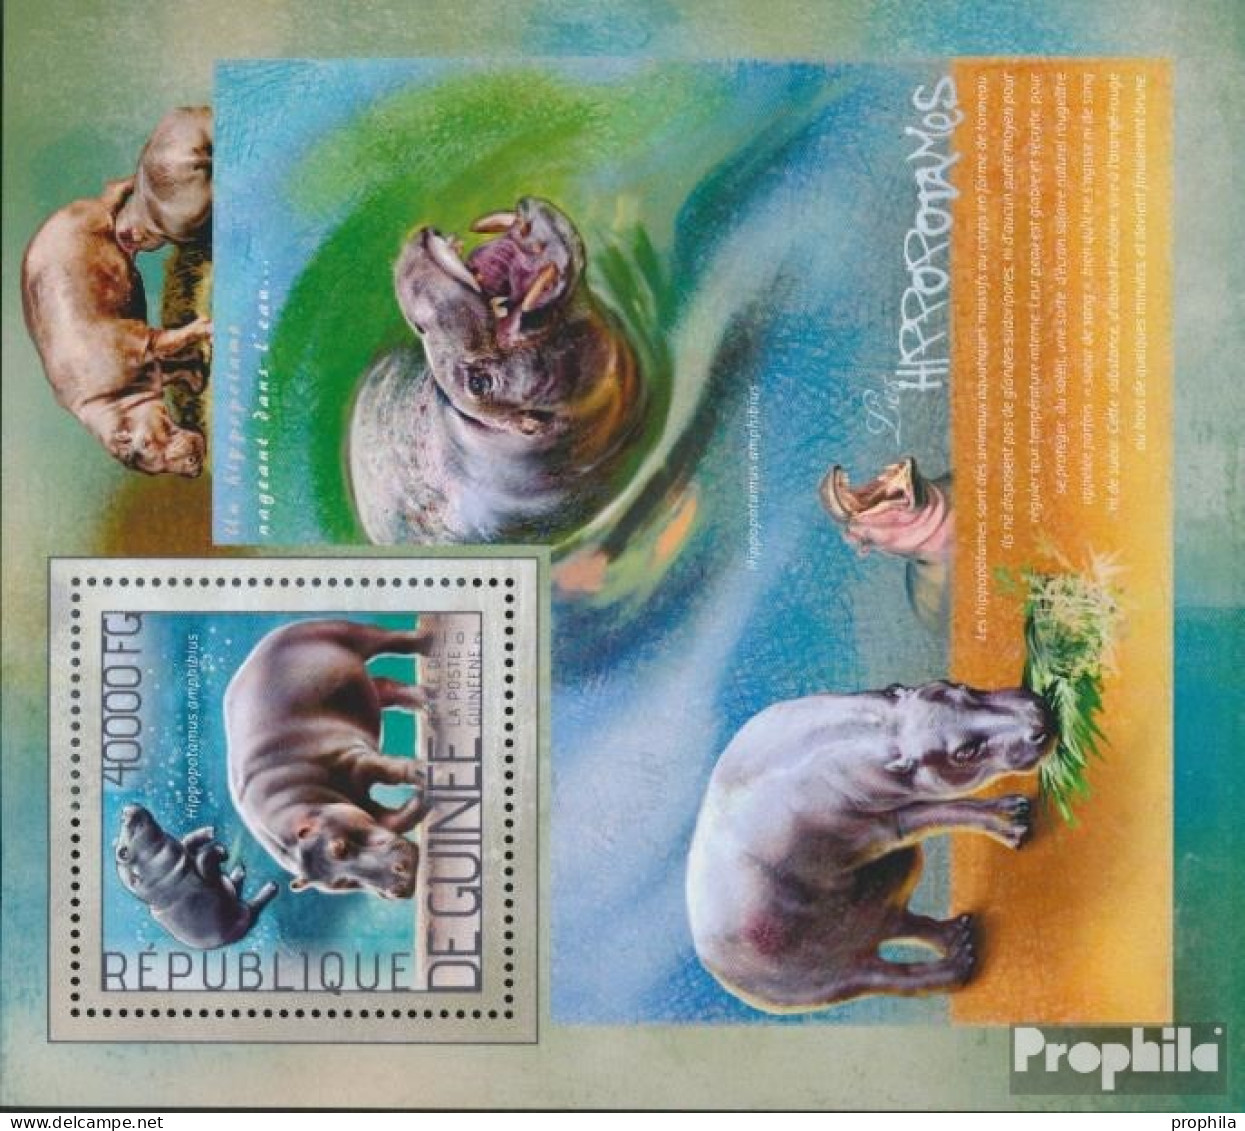 Guinea Block 2370 (kompl. Ausgabe) Postfrisch 2014 Nilpferd - Guinée (1958-...)